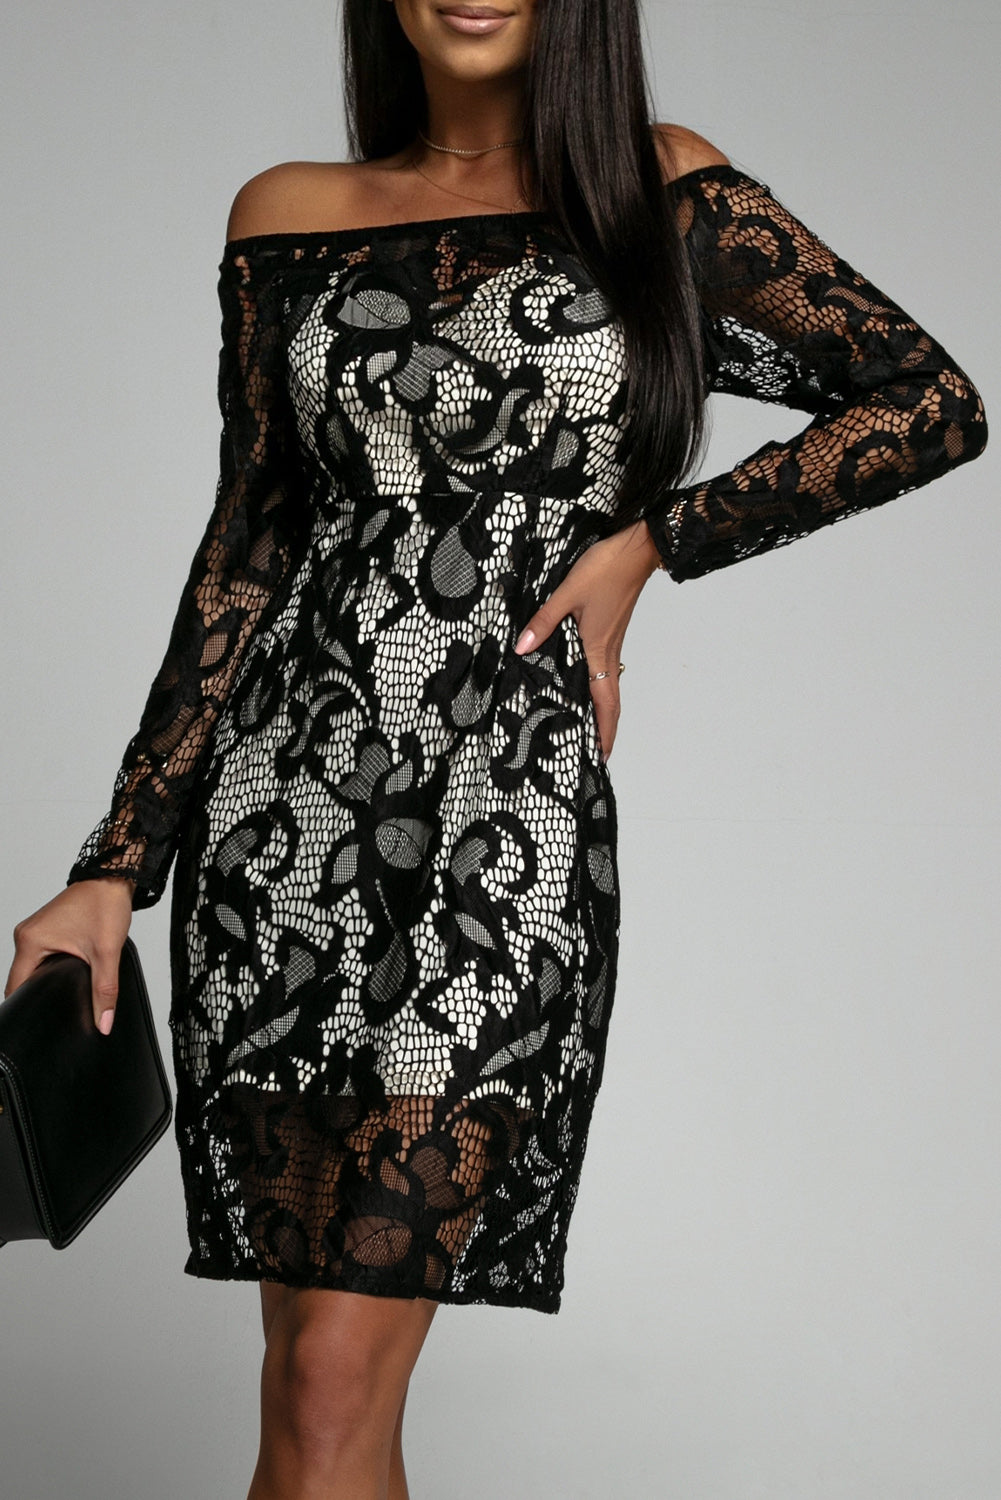 Black Floral Lace Off Shoulder Formal Mini Dress